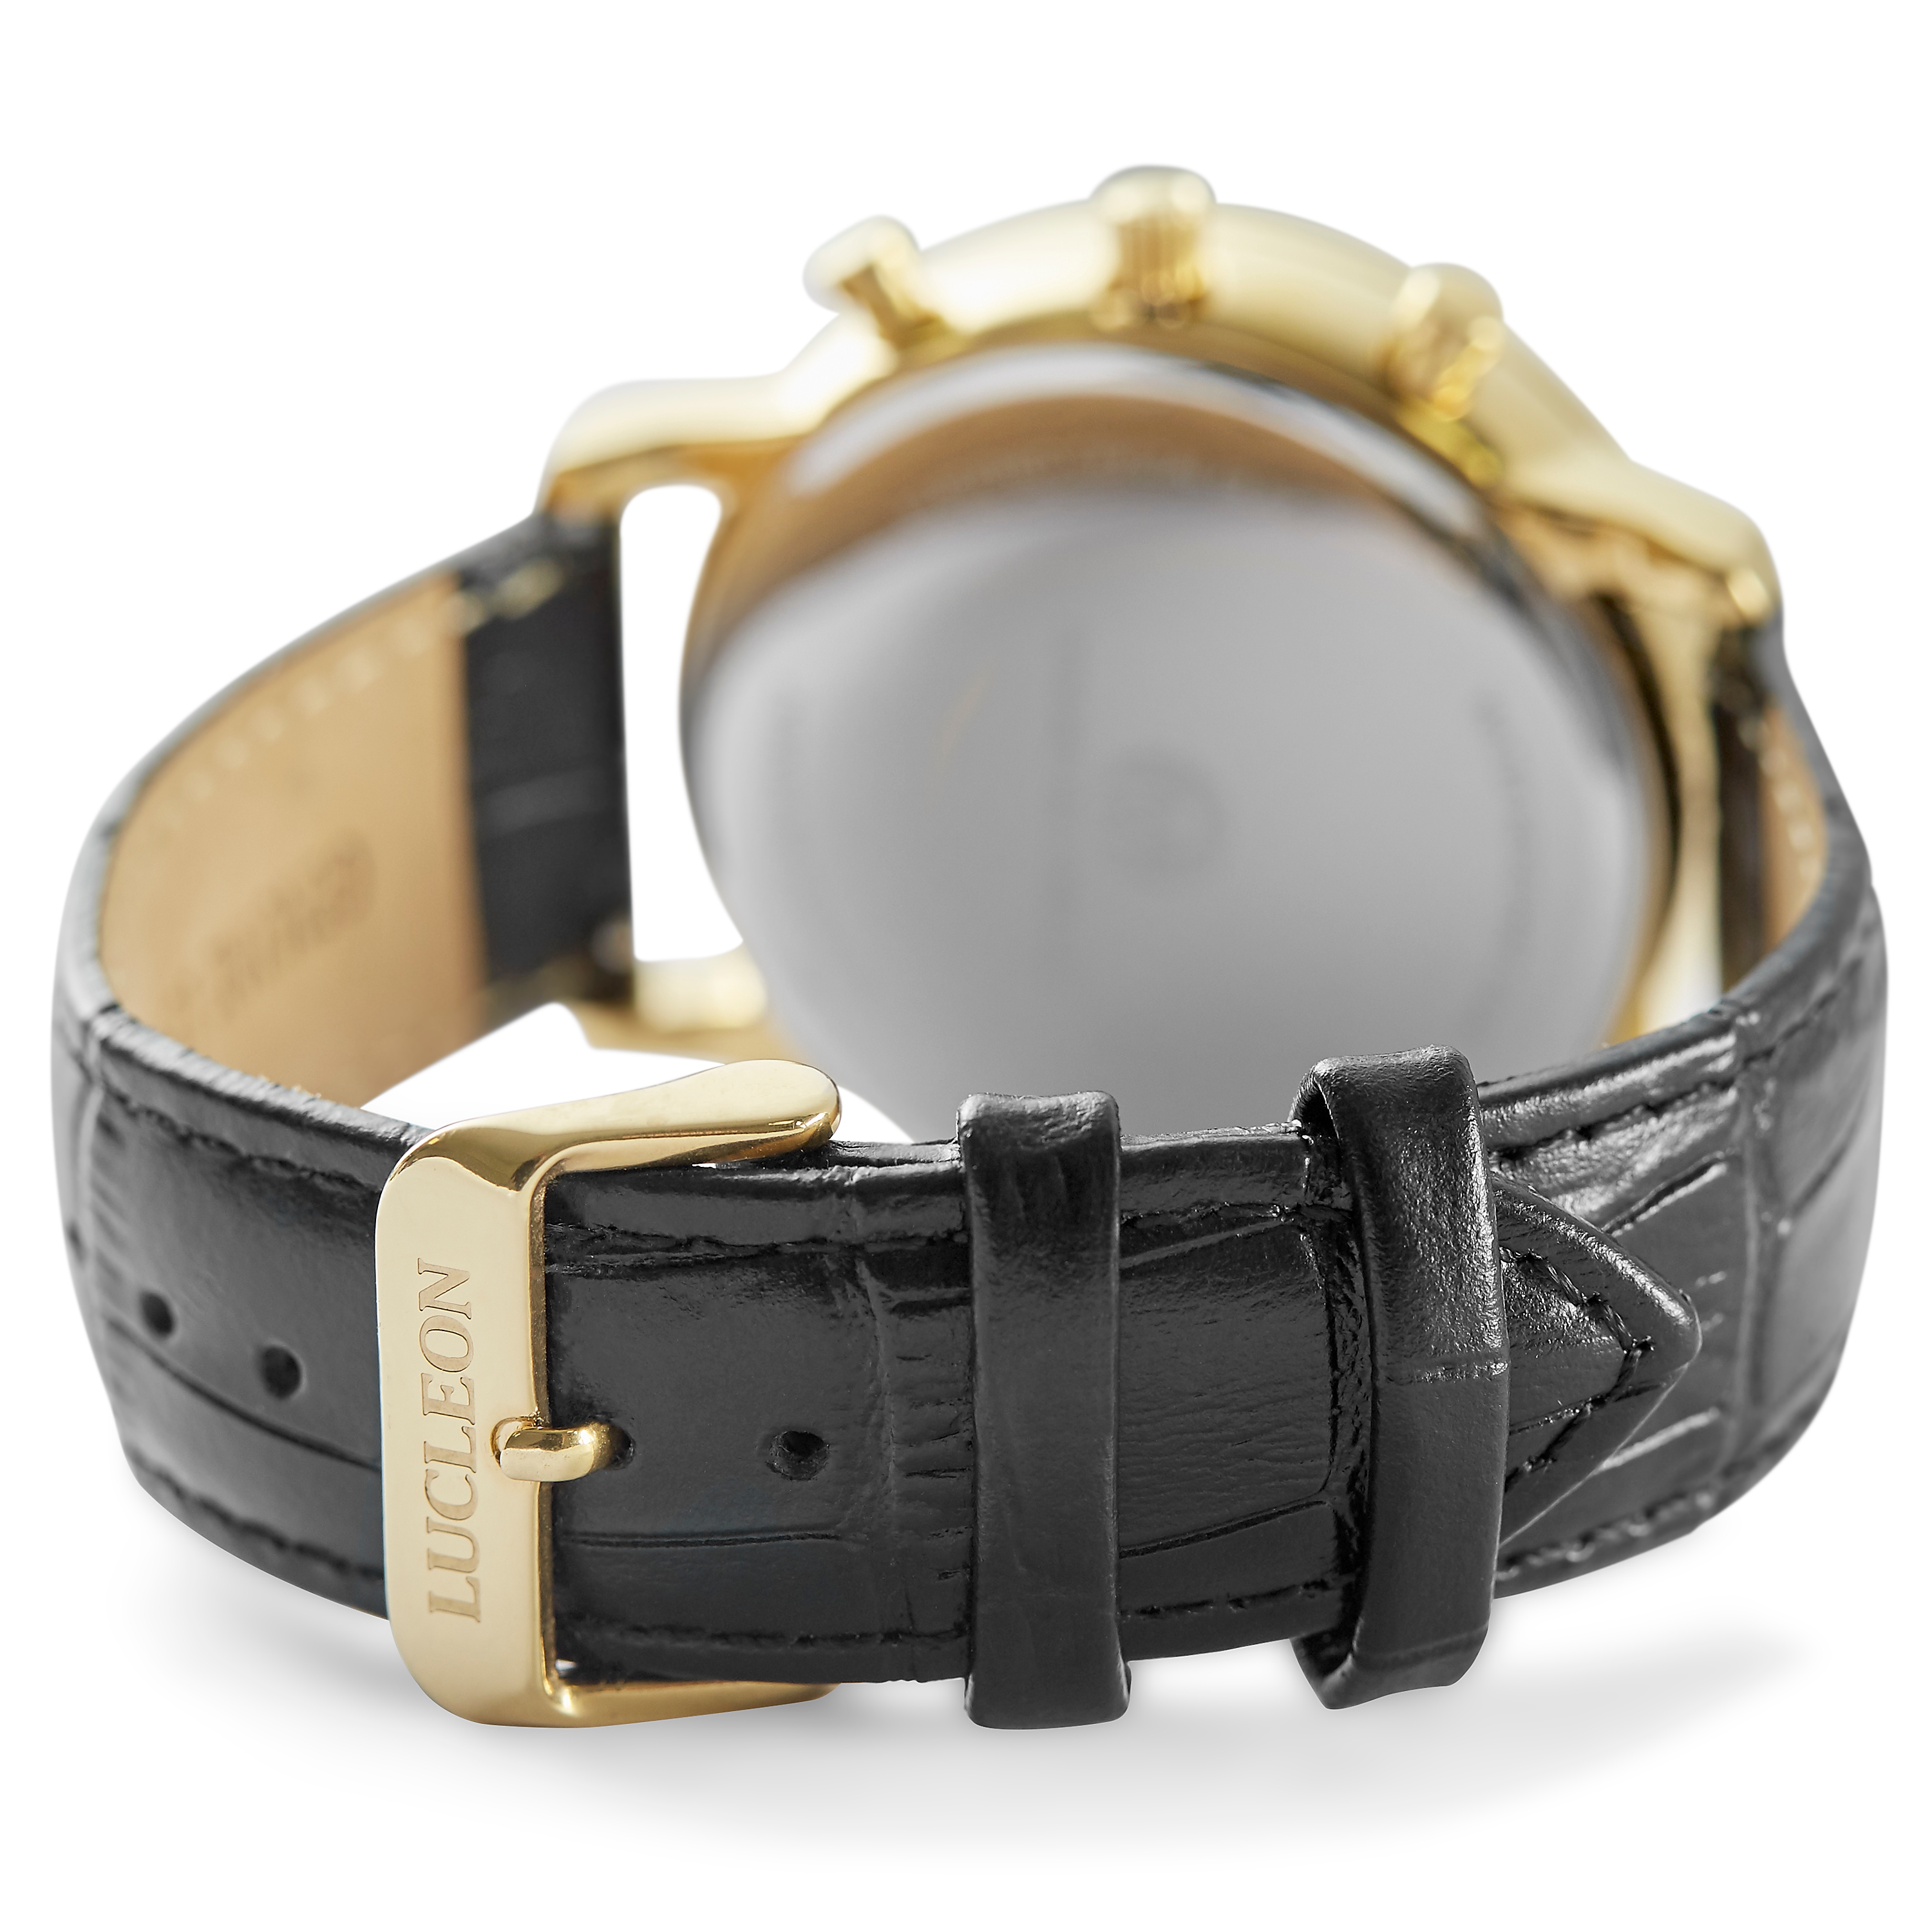 Landgraf Horloge met metalen riempje goud zakelijke stijl Sieraden Horloges Horloges met metalen riempje 